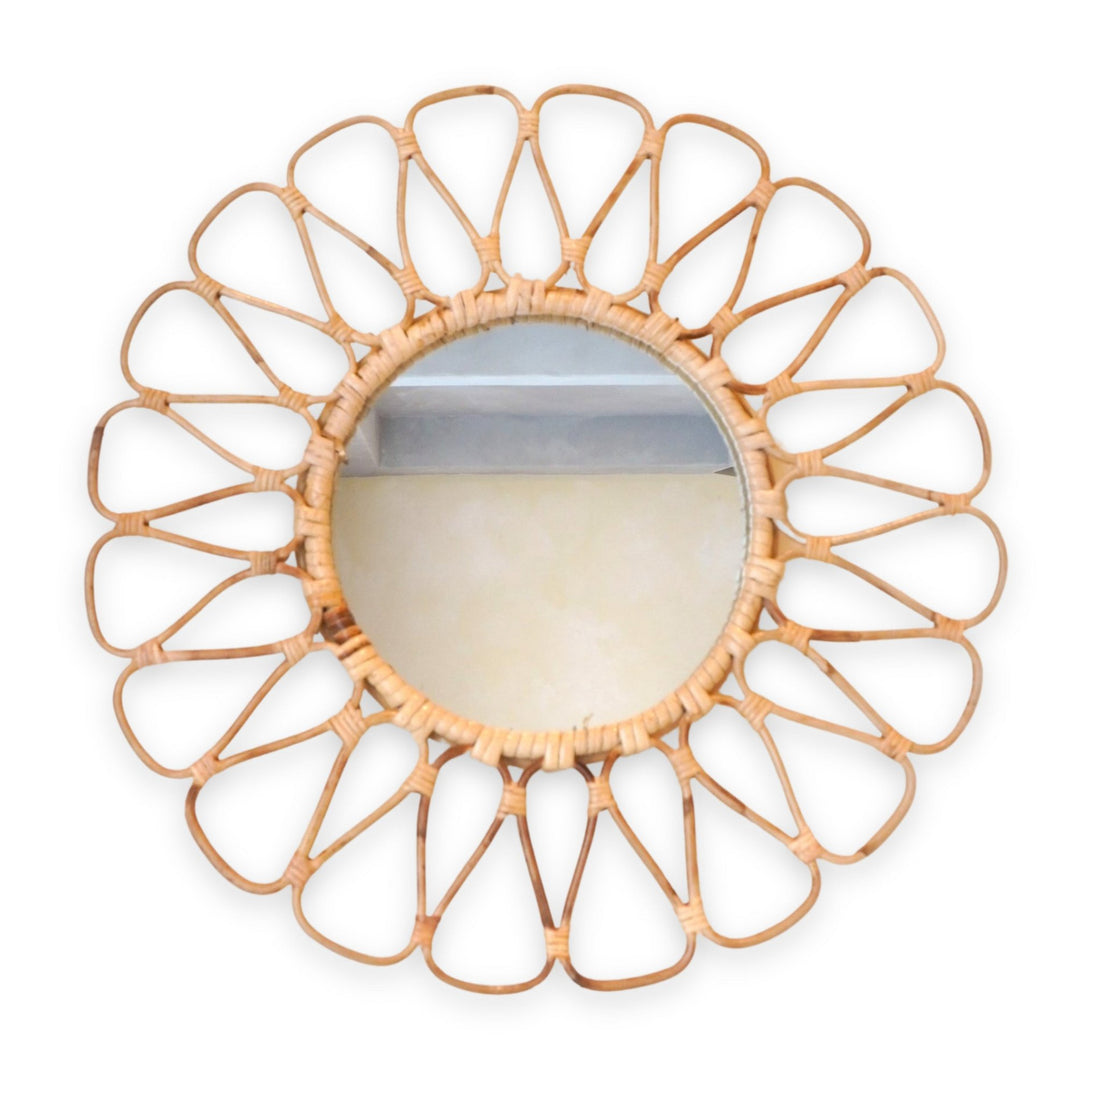 Kleine rotan spiegel 38 cm handgemaakte Boho wandspiegel DAAU wanddecoratie ronde spiegel decoratieve spiegel